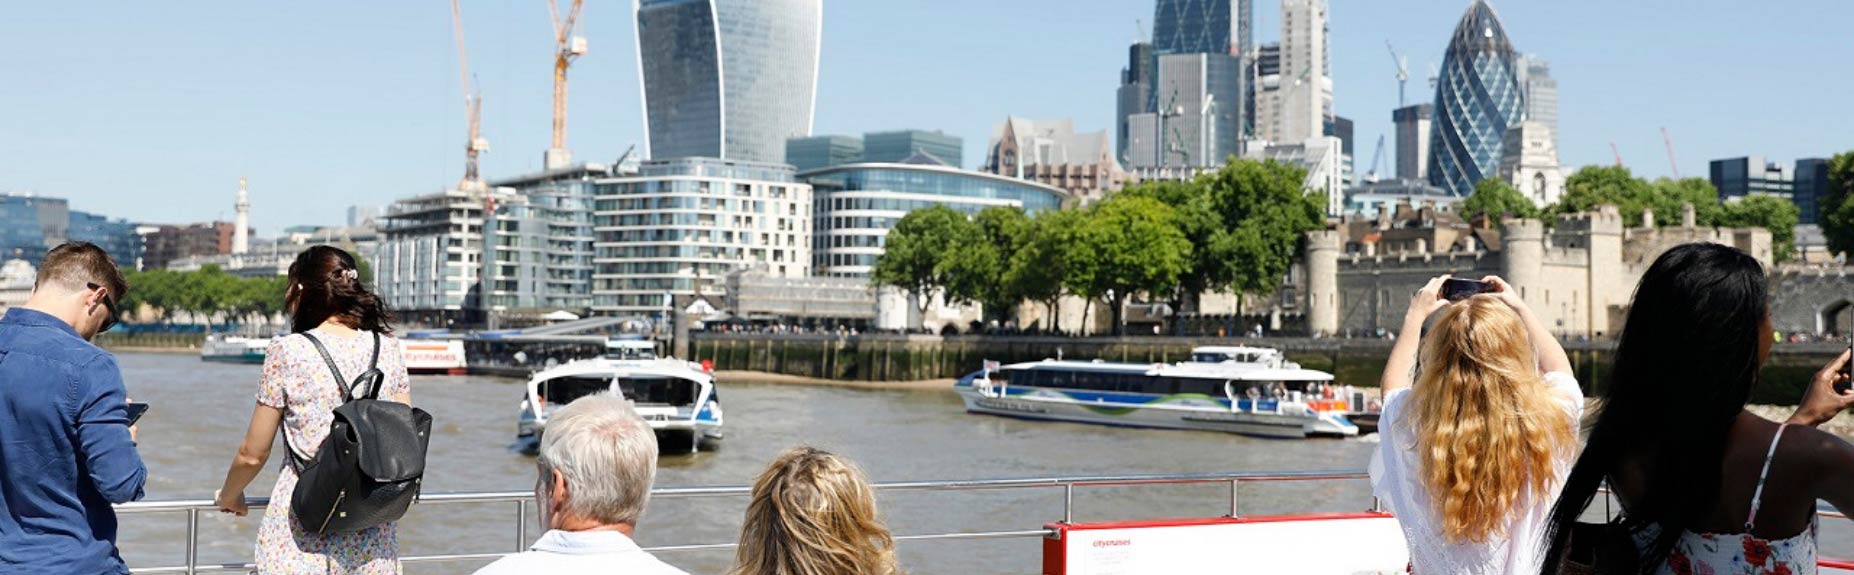 Orang-orang di dek bot Thames dan London di latar belakang